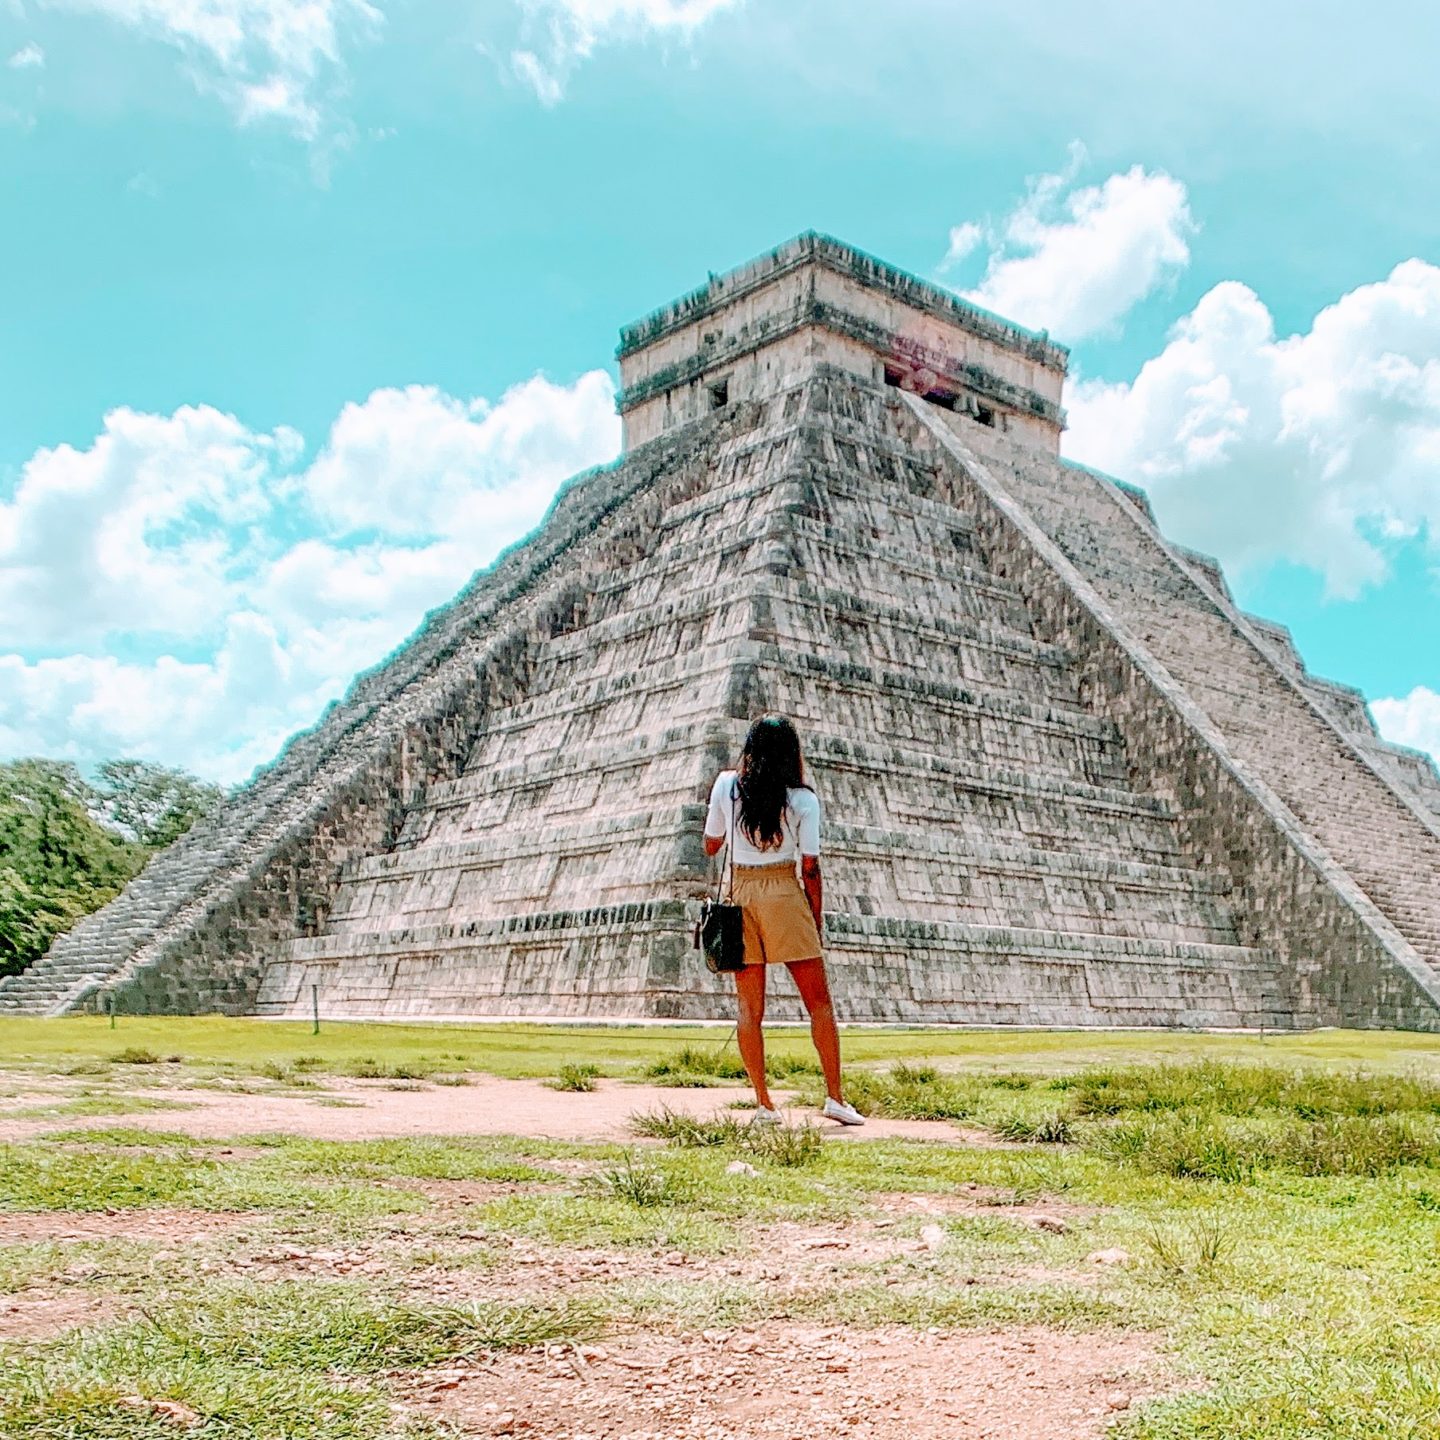 kira standing in front of El Castillo in Chichén Itzá